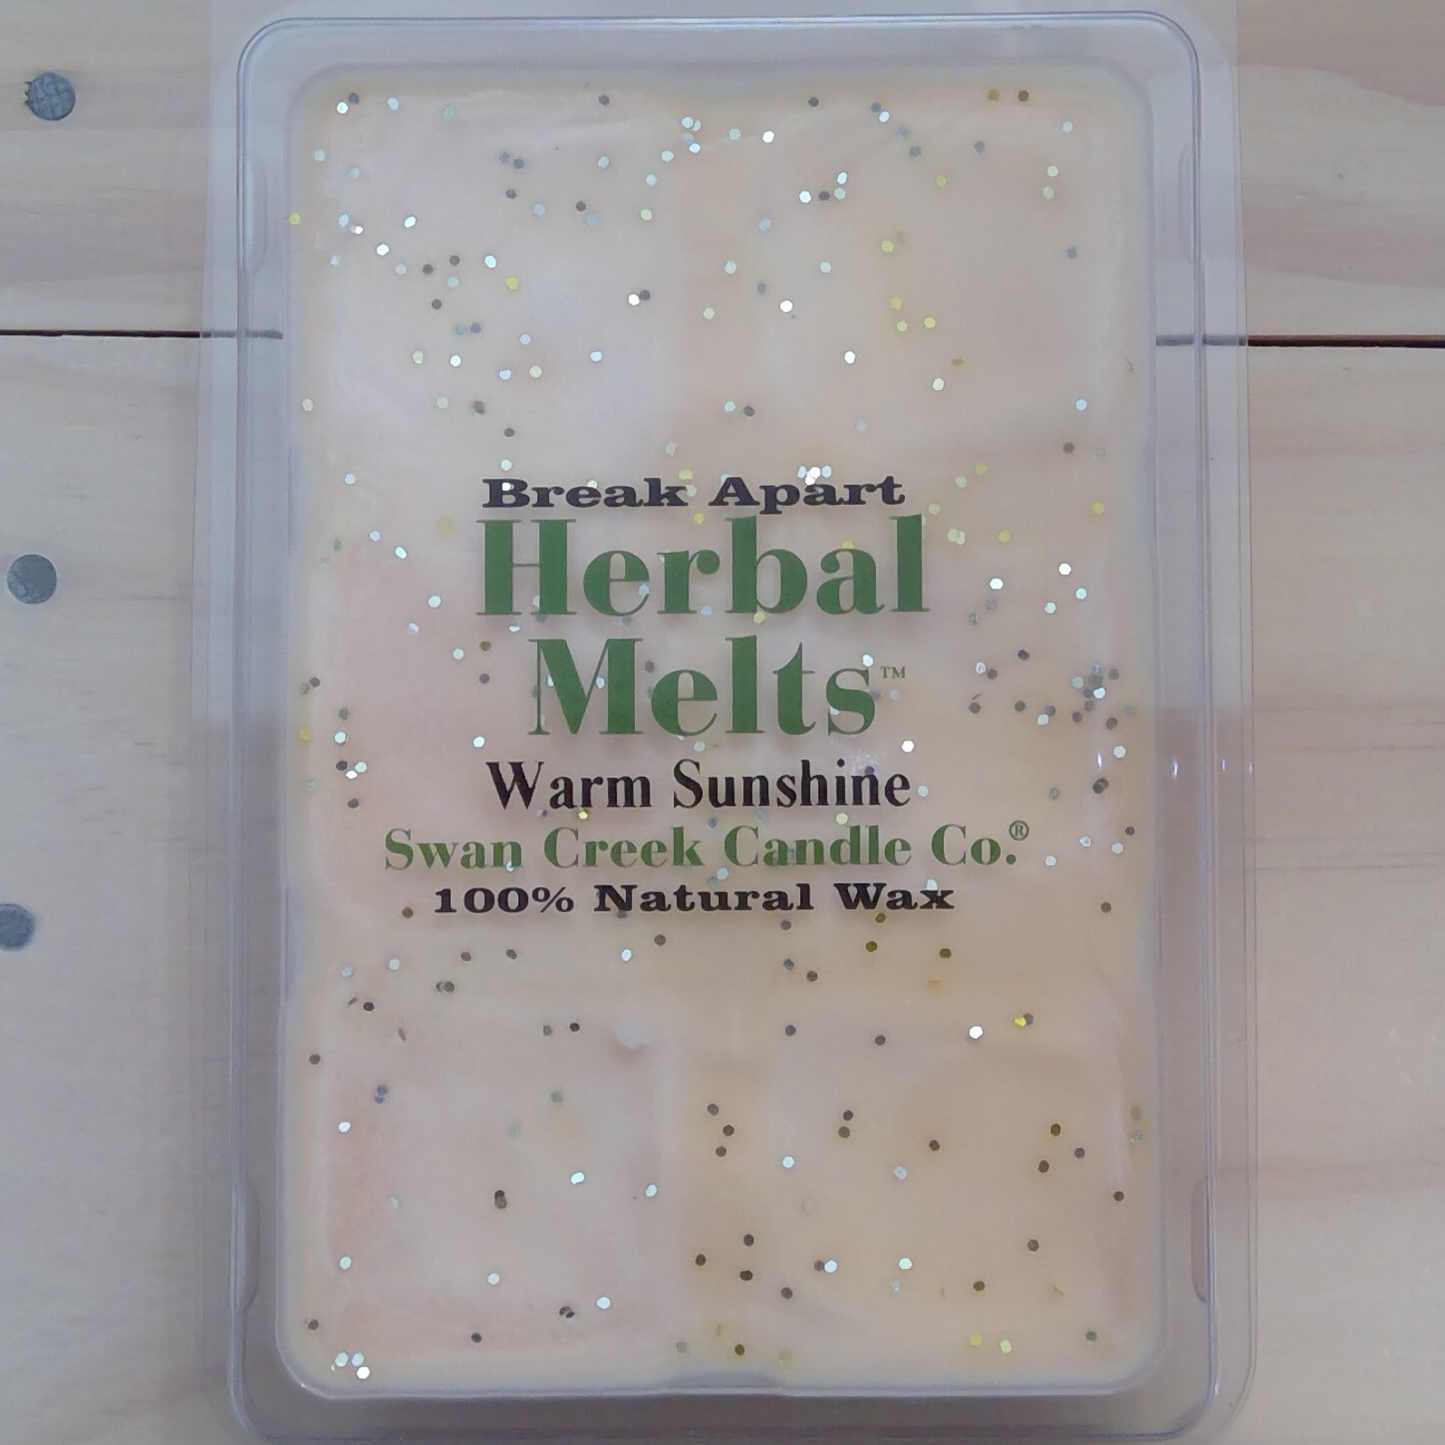 Warm Sunshine Herbal Melts